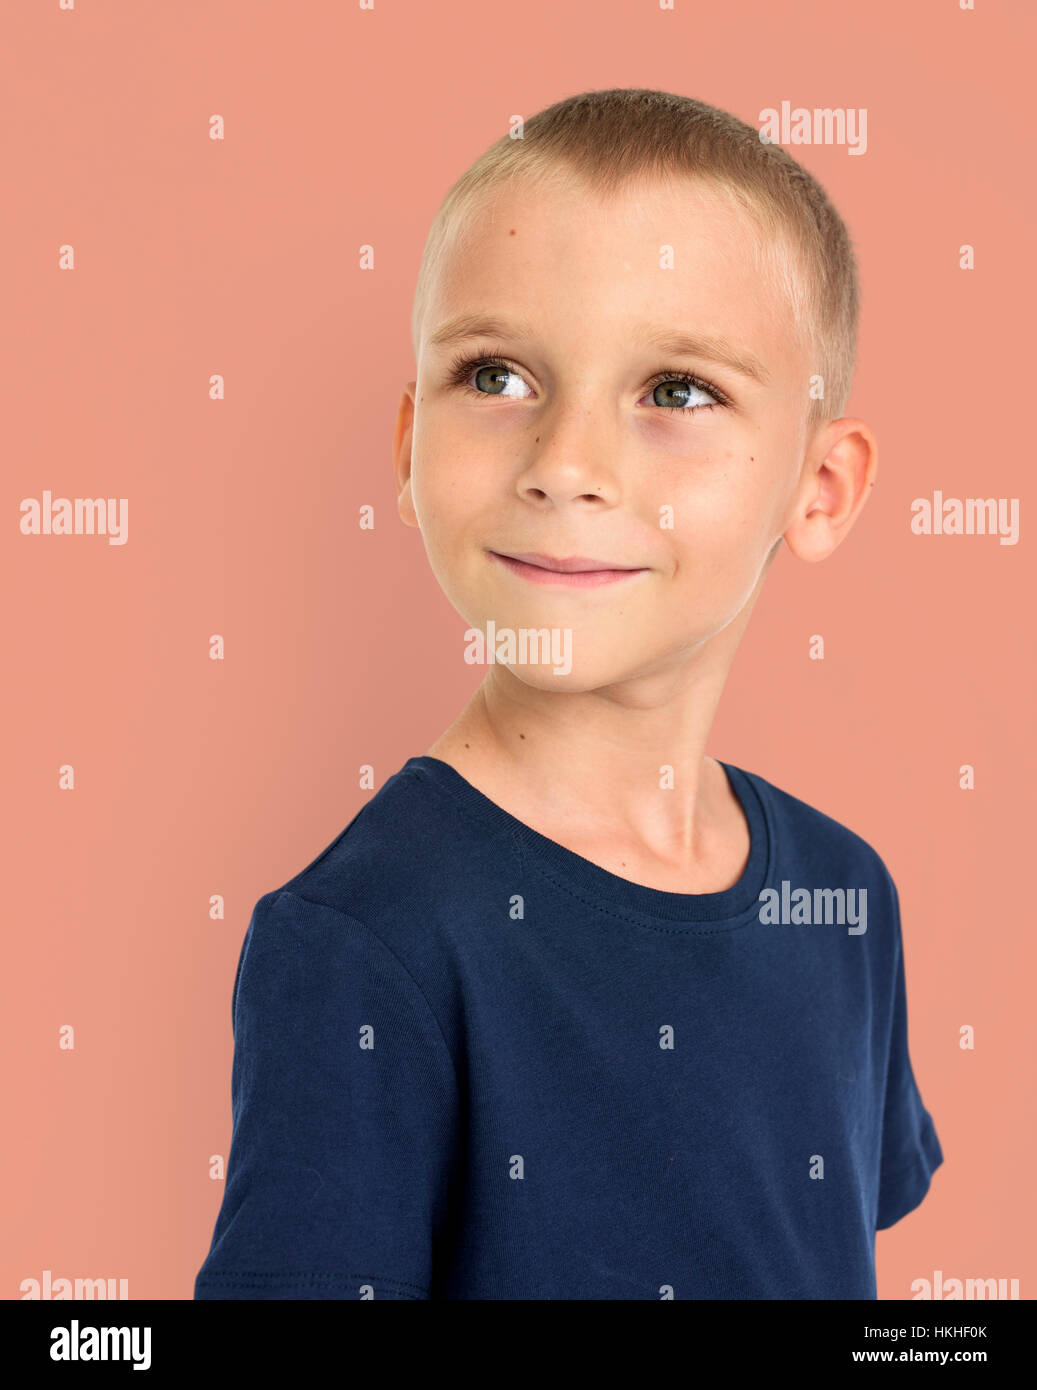 Capretto piccolo ragazzo sorriso felice concetto Foto Stock